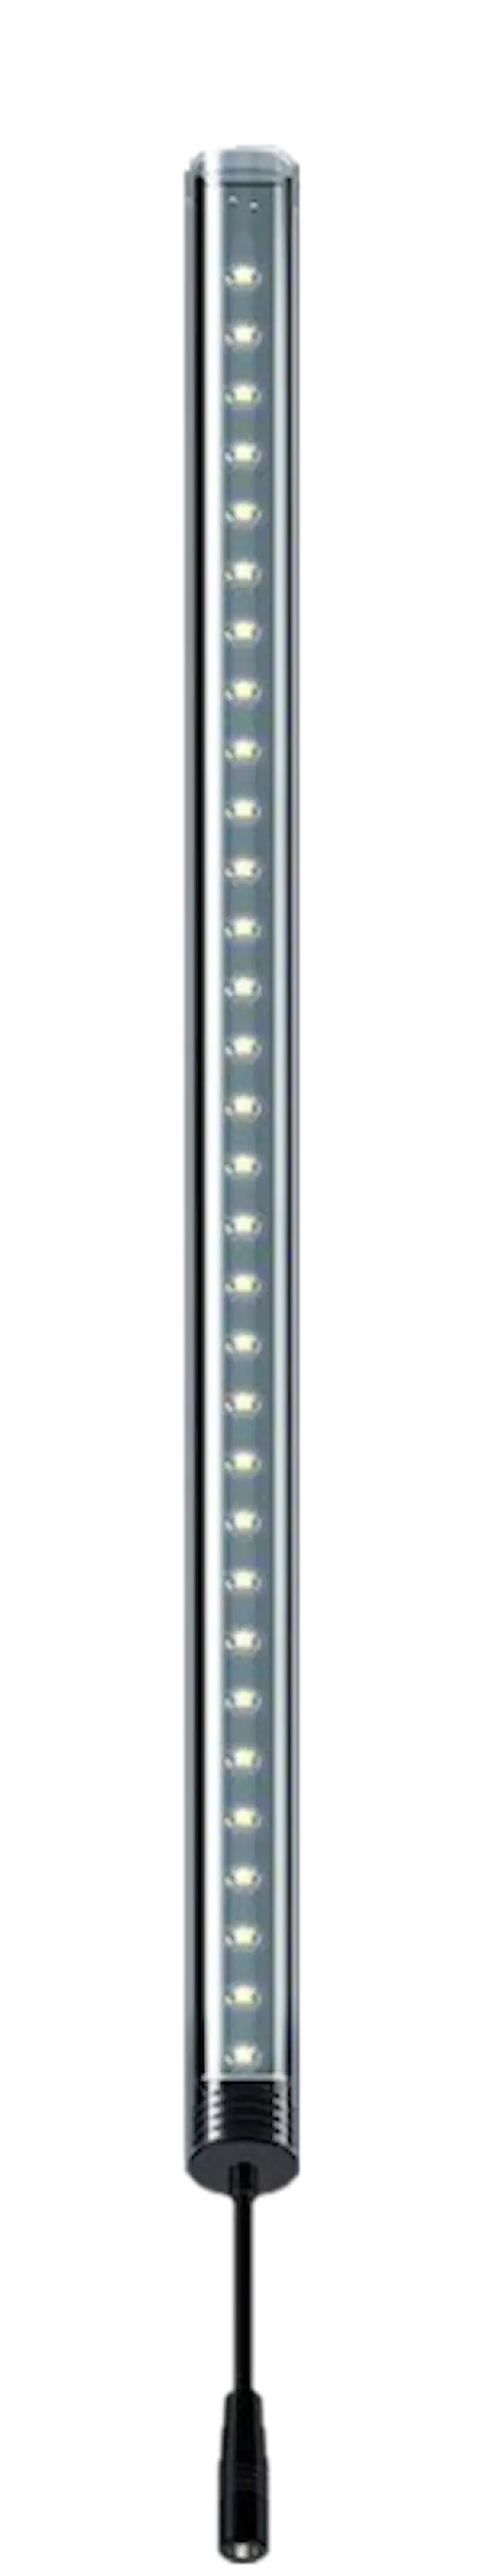 LightWave LED komplett sett, 520 - 600 mm